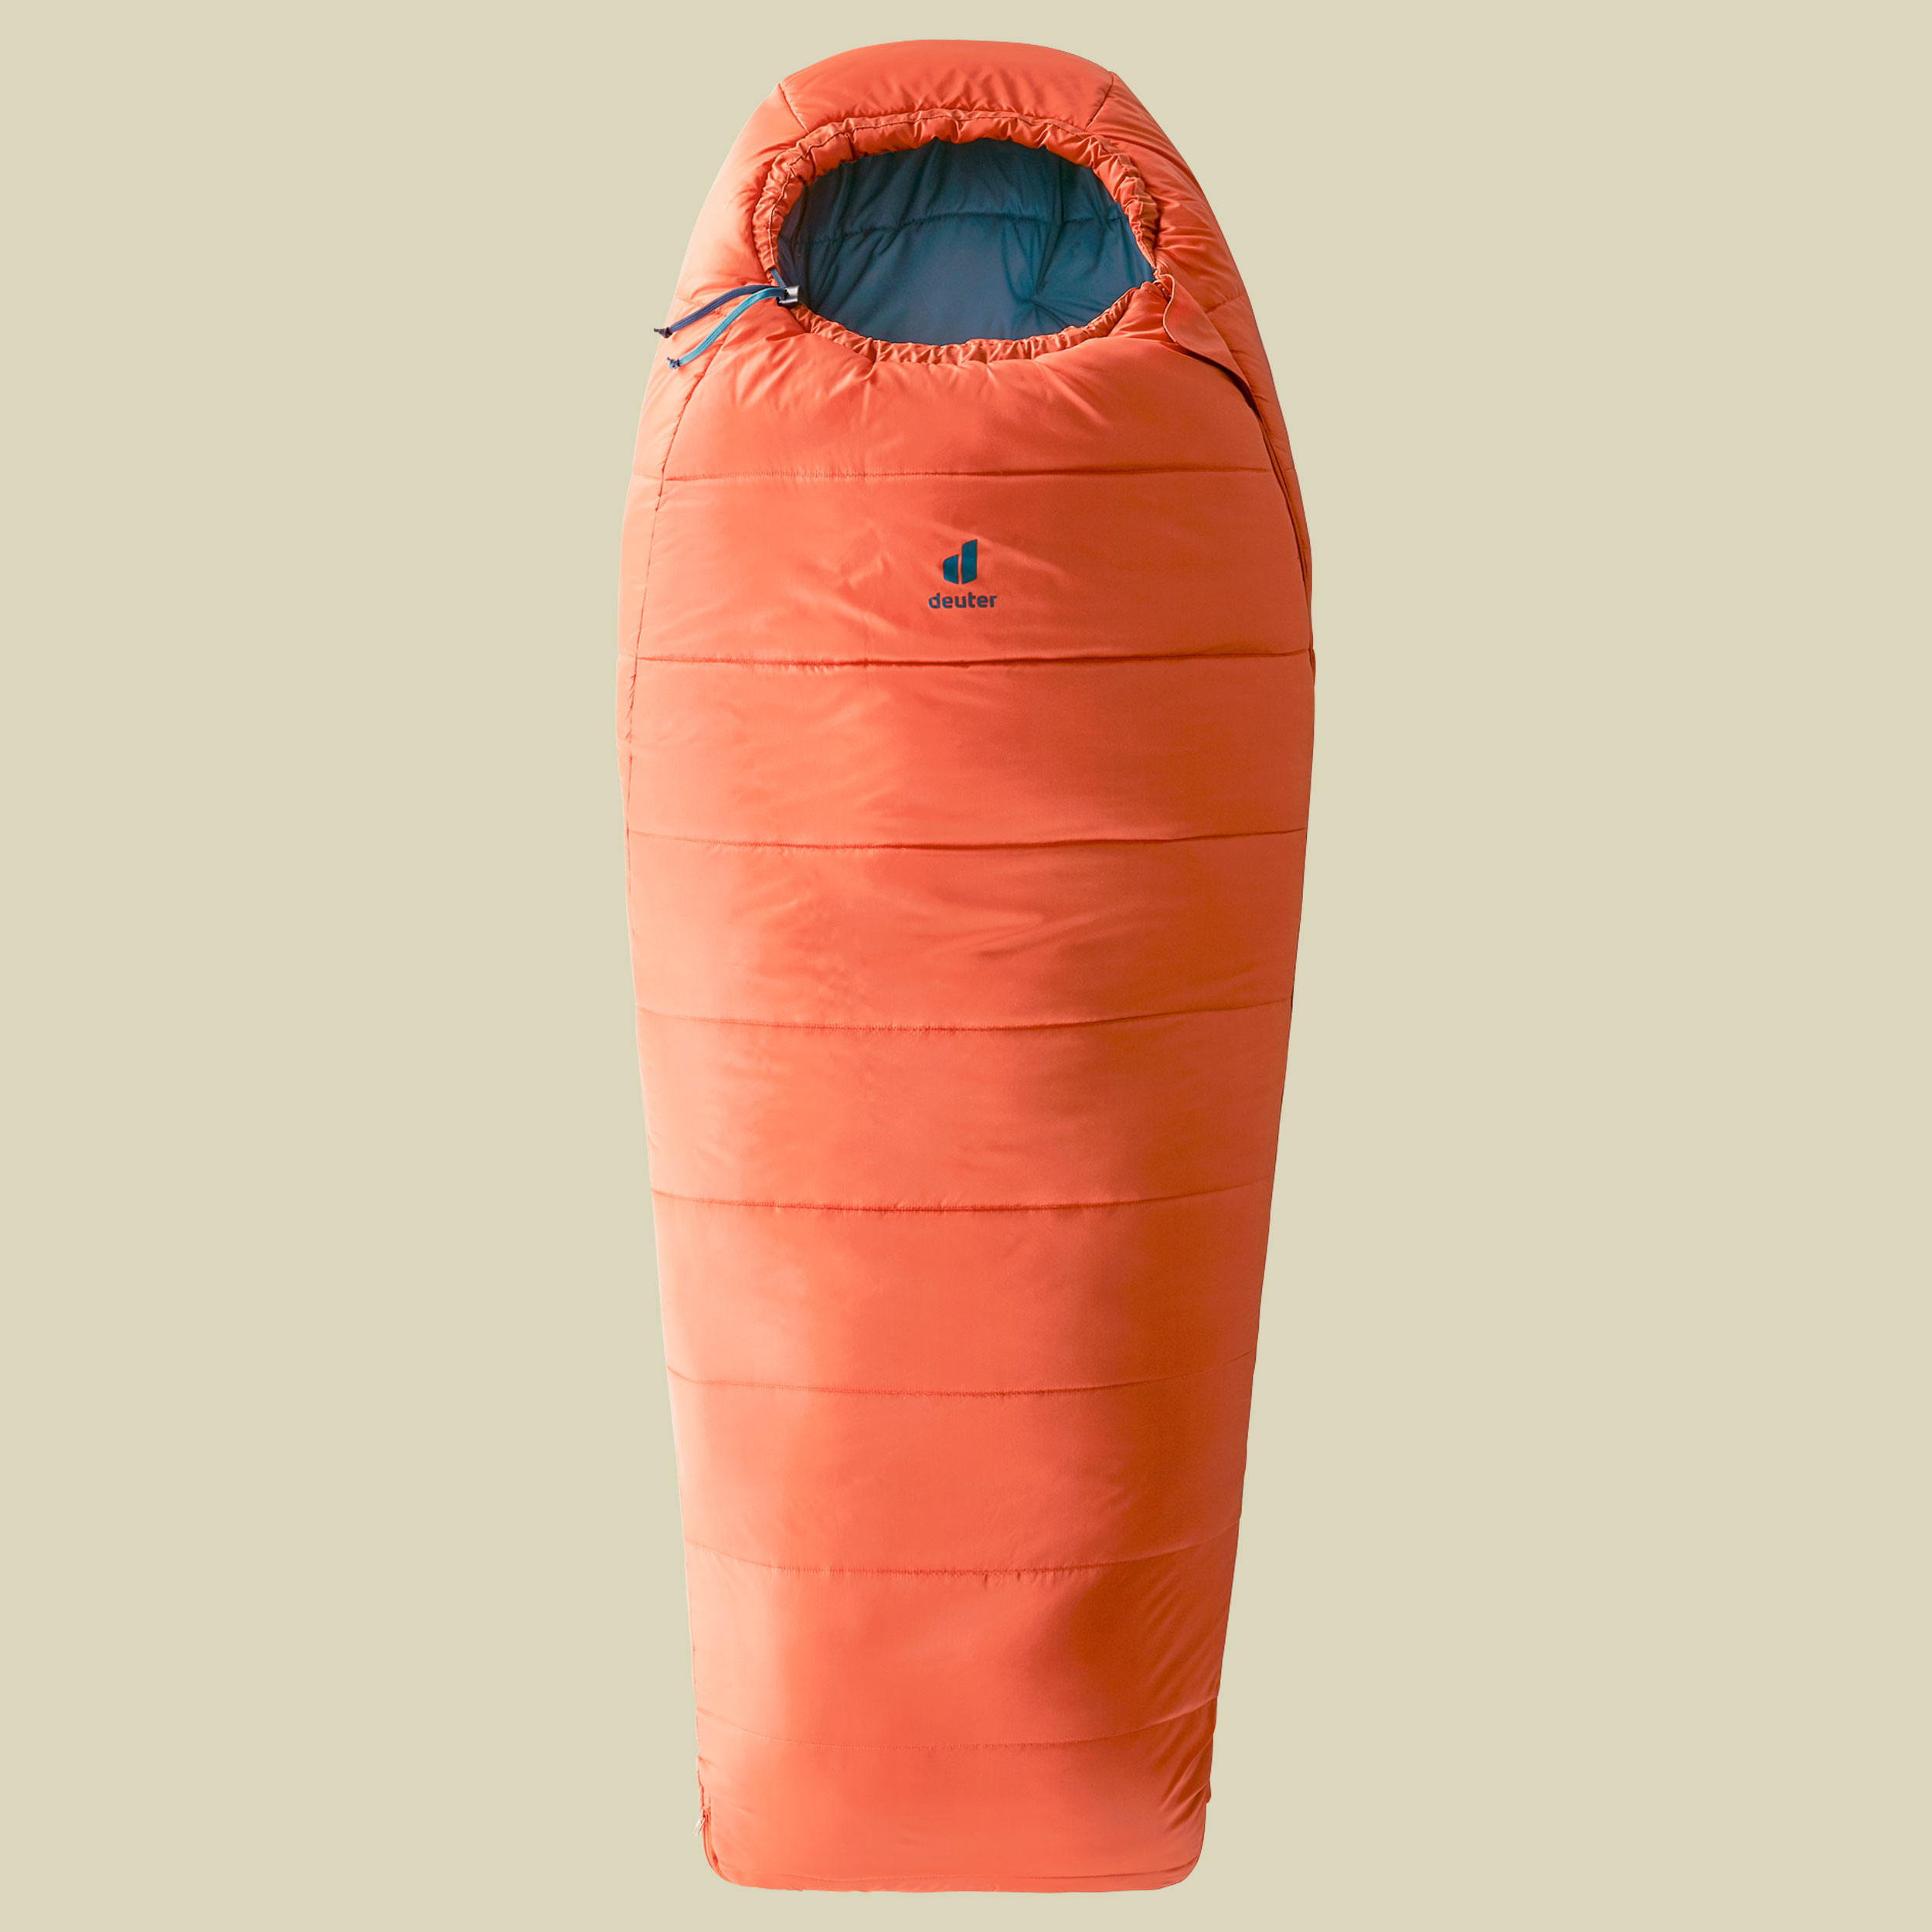 Starlight Pro Kids für Körpergröße 130-170 cm Farbe paprika-slateblue